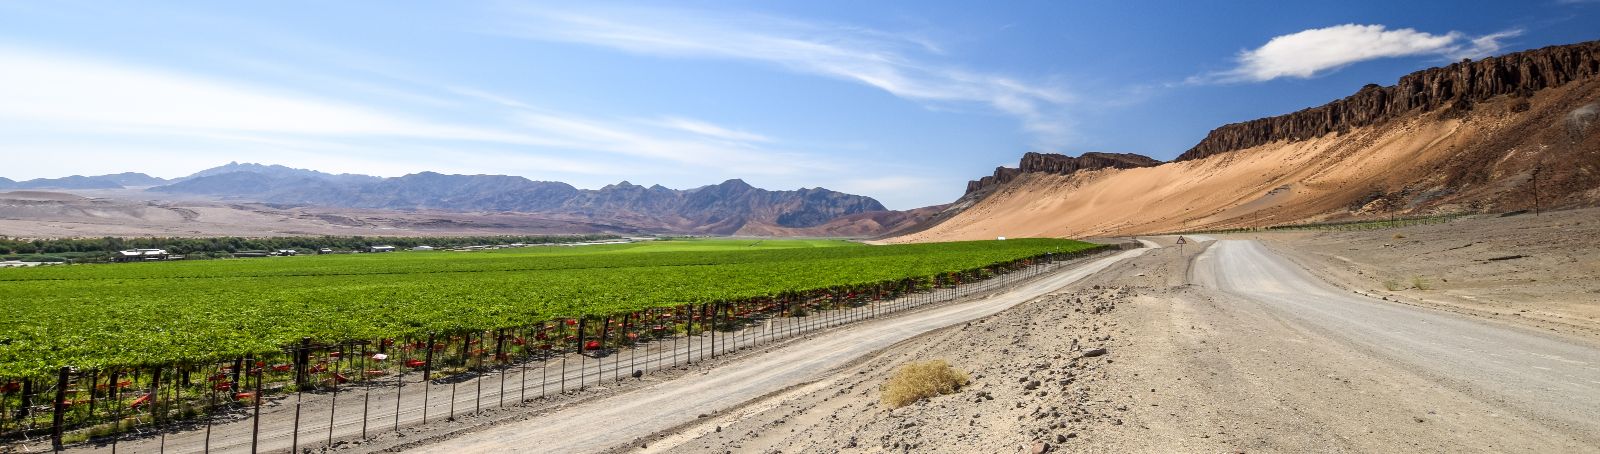 Das Gewinnerprojekt Orange River Vineyard kommt aus Aussenkehr in Namibia, einer Weinbauregion an der Grenze zu Südafrika.